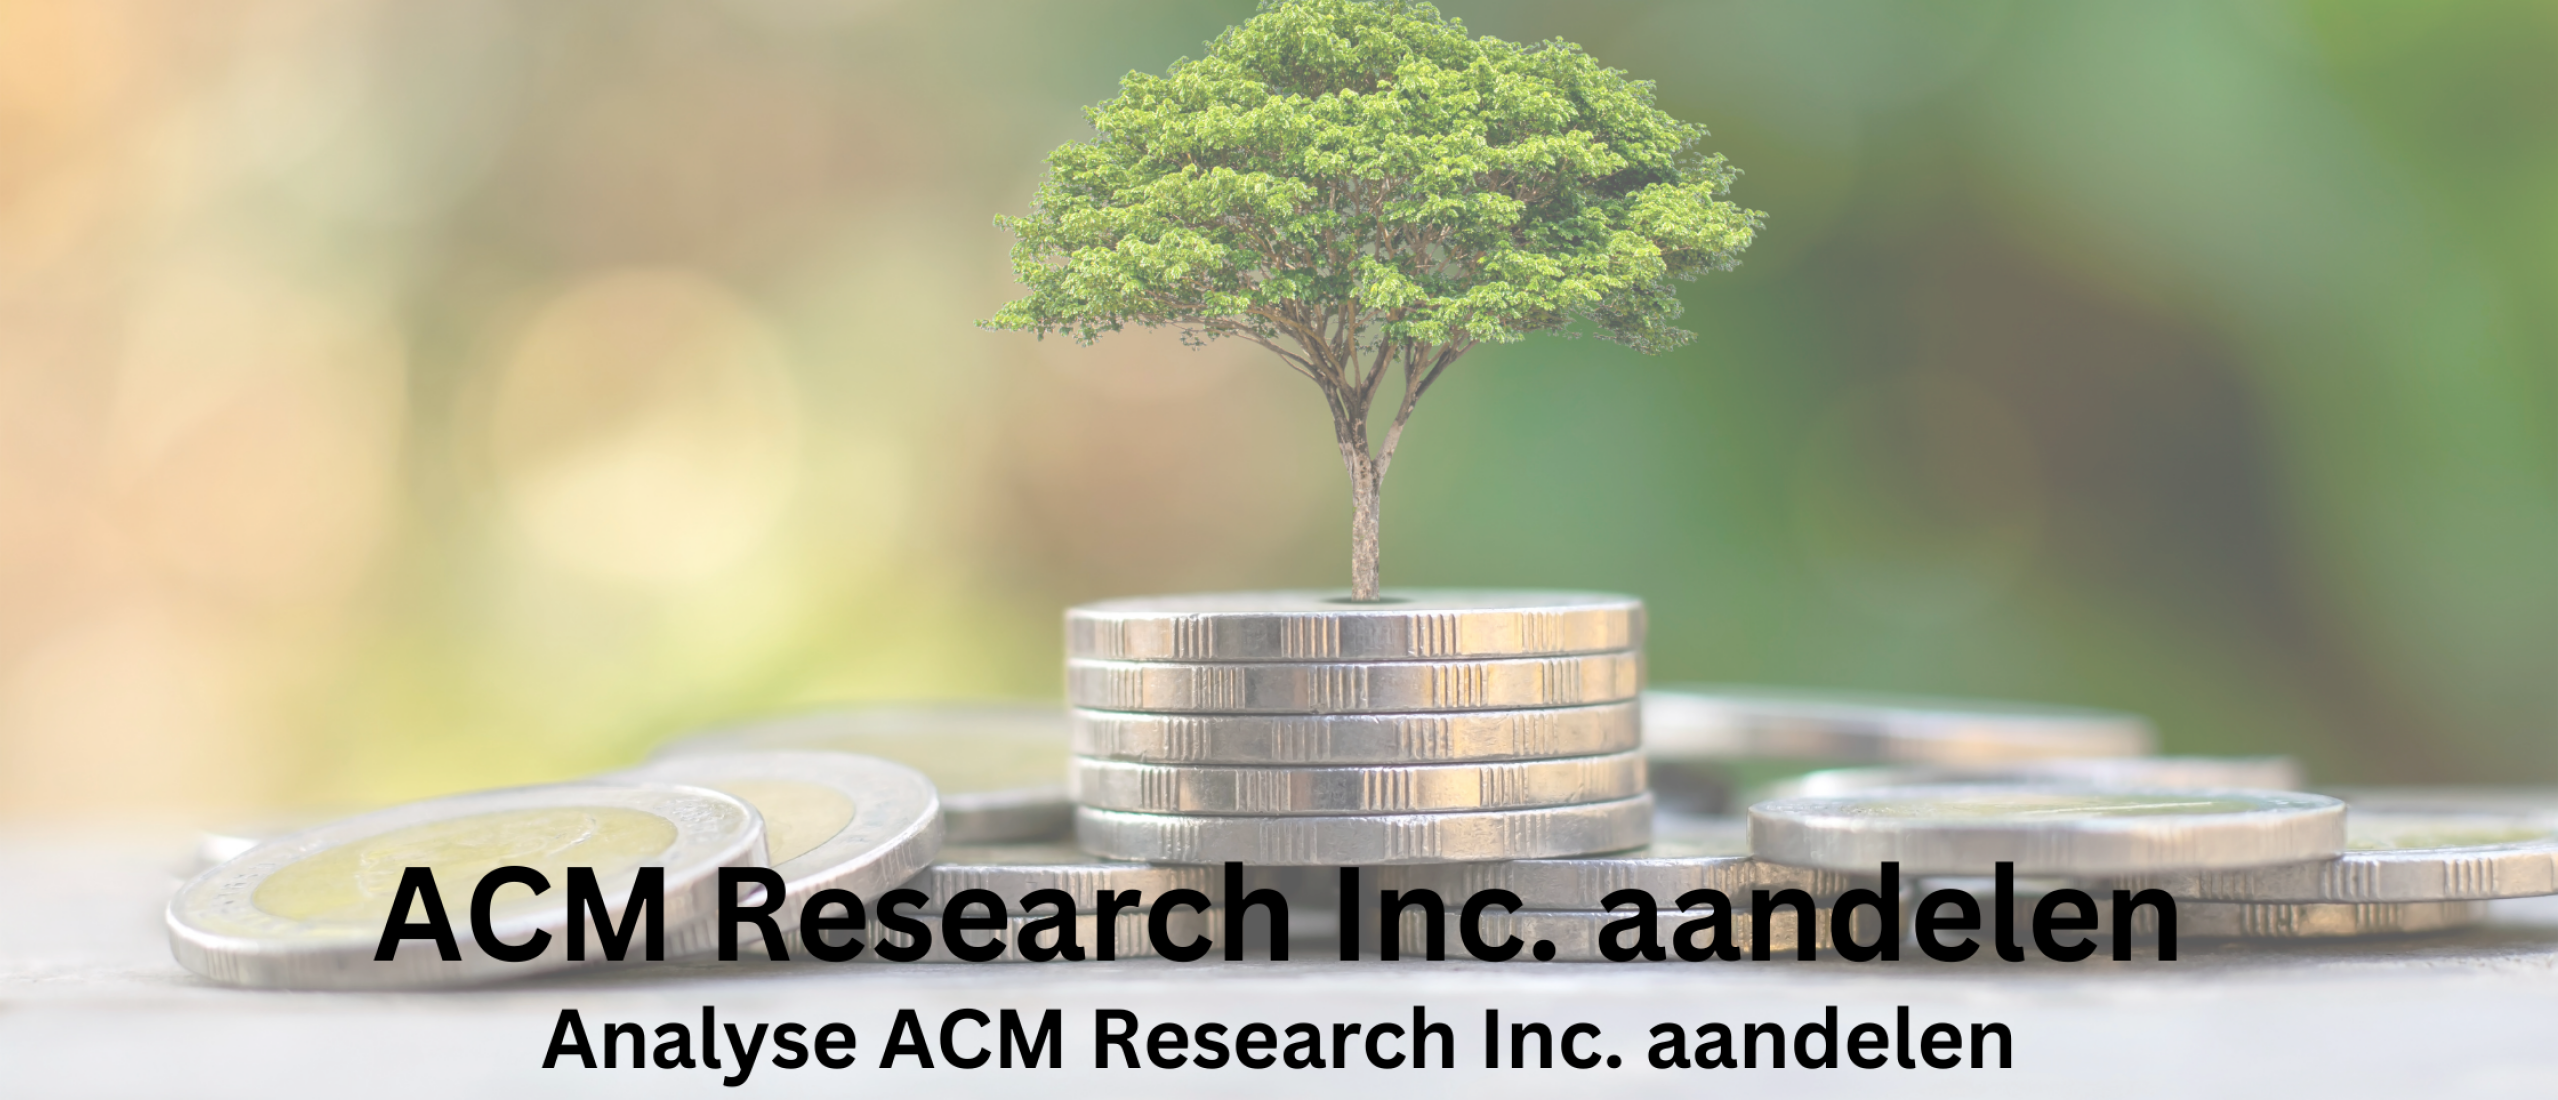 Small cap aandeel ACM Research aandelen kopen? Analyse +38,8% Groei | Happy Investors